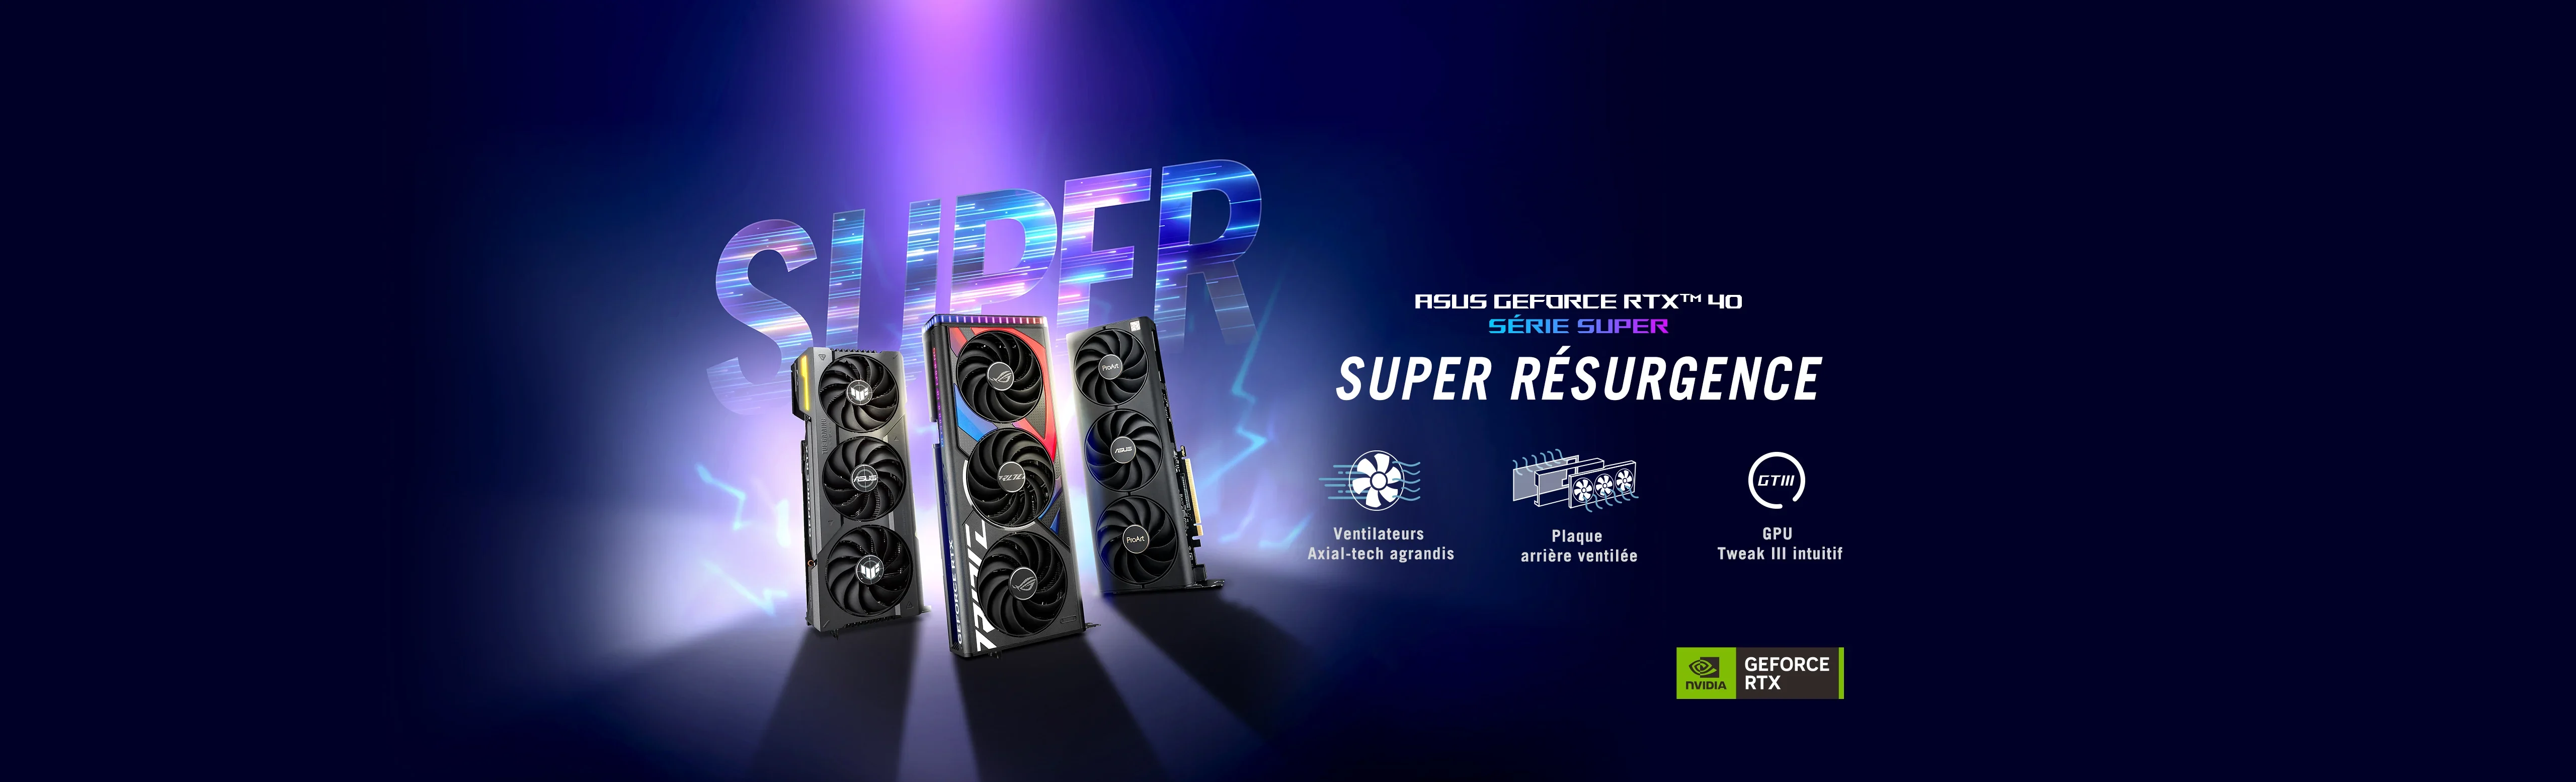 ASUS GeForce RTX™ SUPER SÉRIE 40 — SUPER RÉSISTANCE, avec de plus grands ventilateurs Axial-Tech, une plaque arrière ventilée et un GPU Tweak III convivial